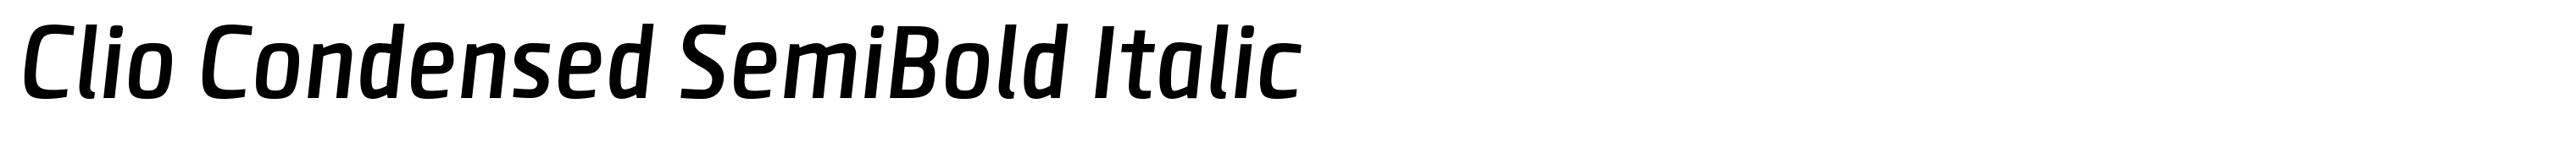 Clio Condensed SemiBold Italic